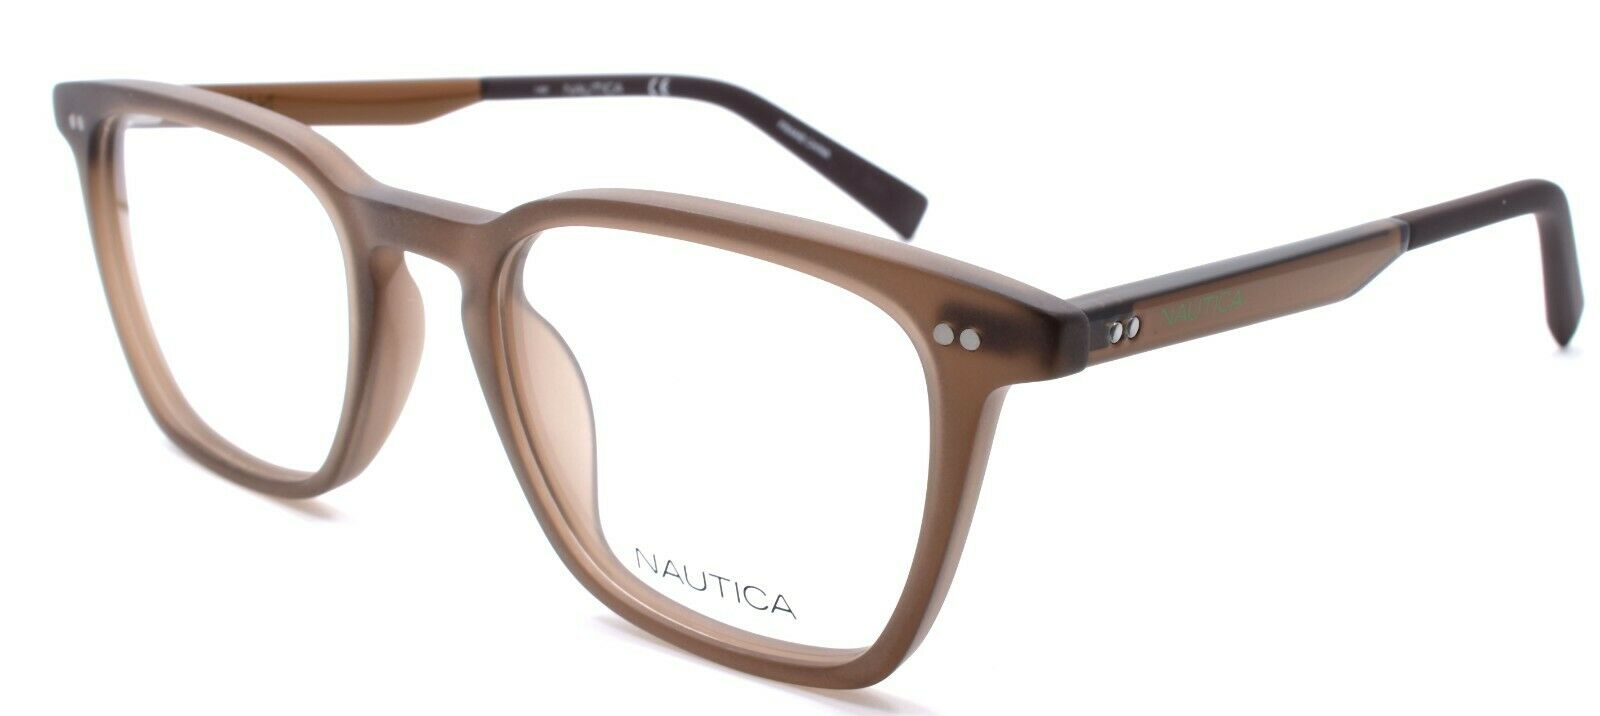 1-Nautica N8152 210 Men's Eyeglasses Frames 50-20-140 Matte Brown-688940462364-IKSpecs